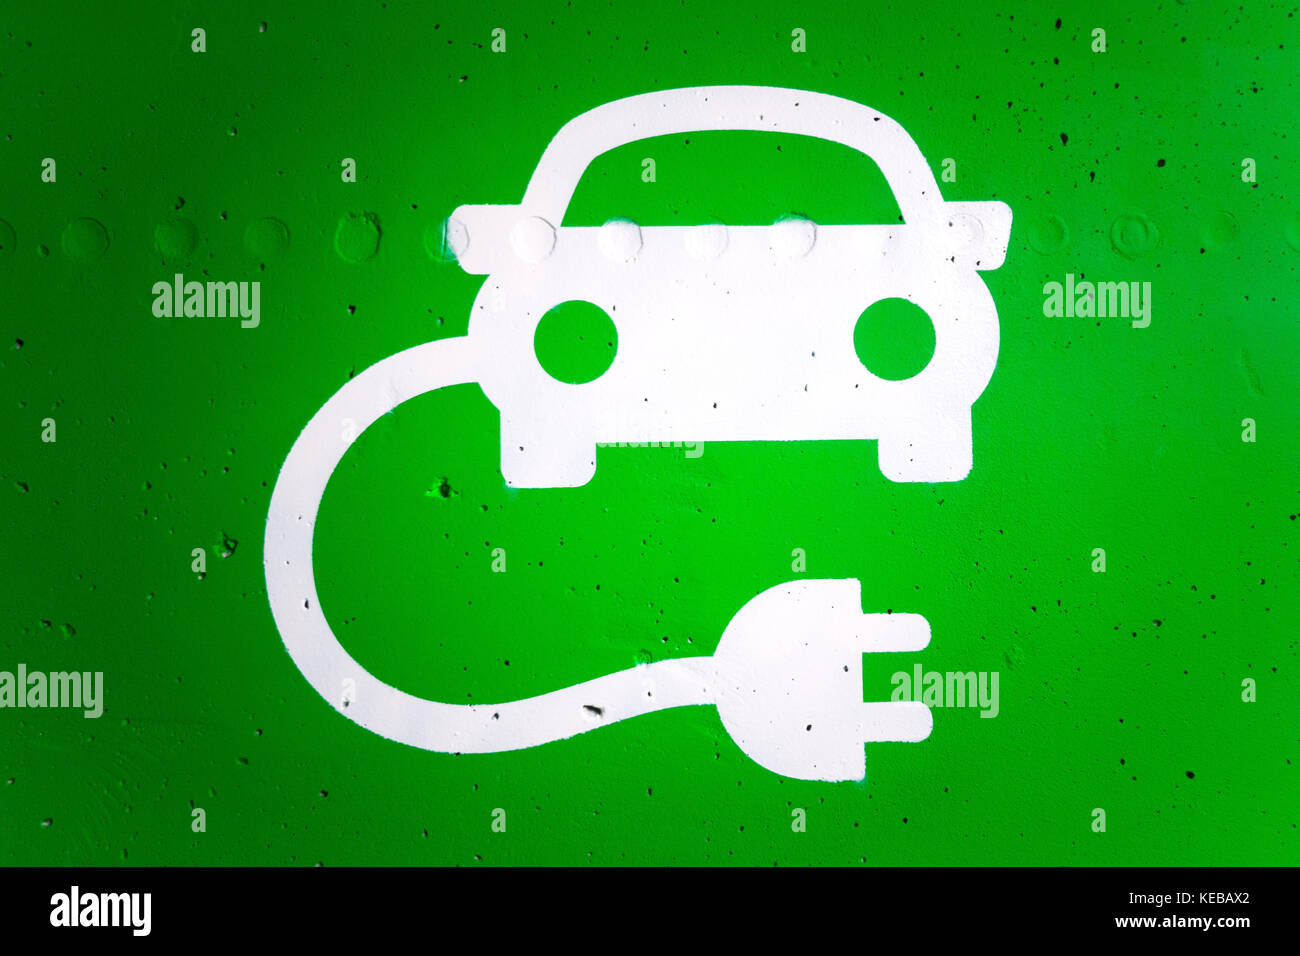 Y verde, mientras que la estación de carga de coches eléctricos en un símbolo gráfico. Foto de stock